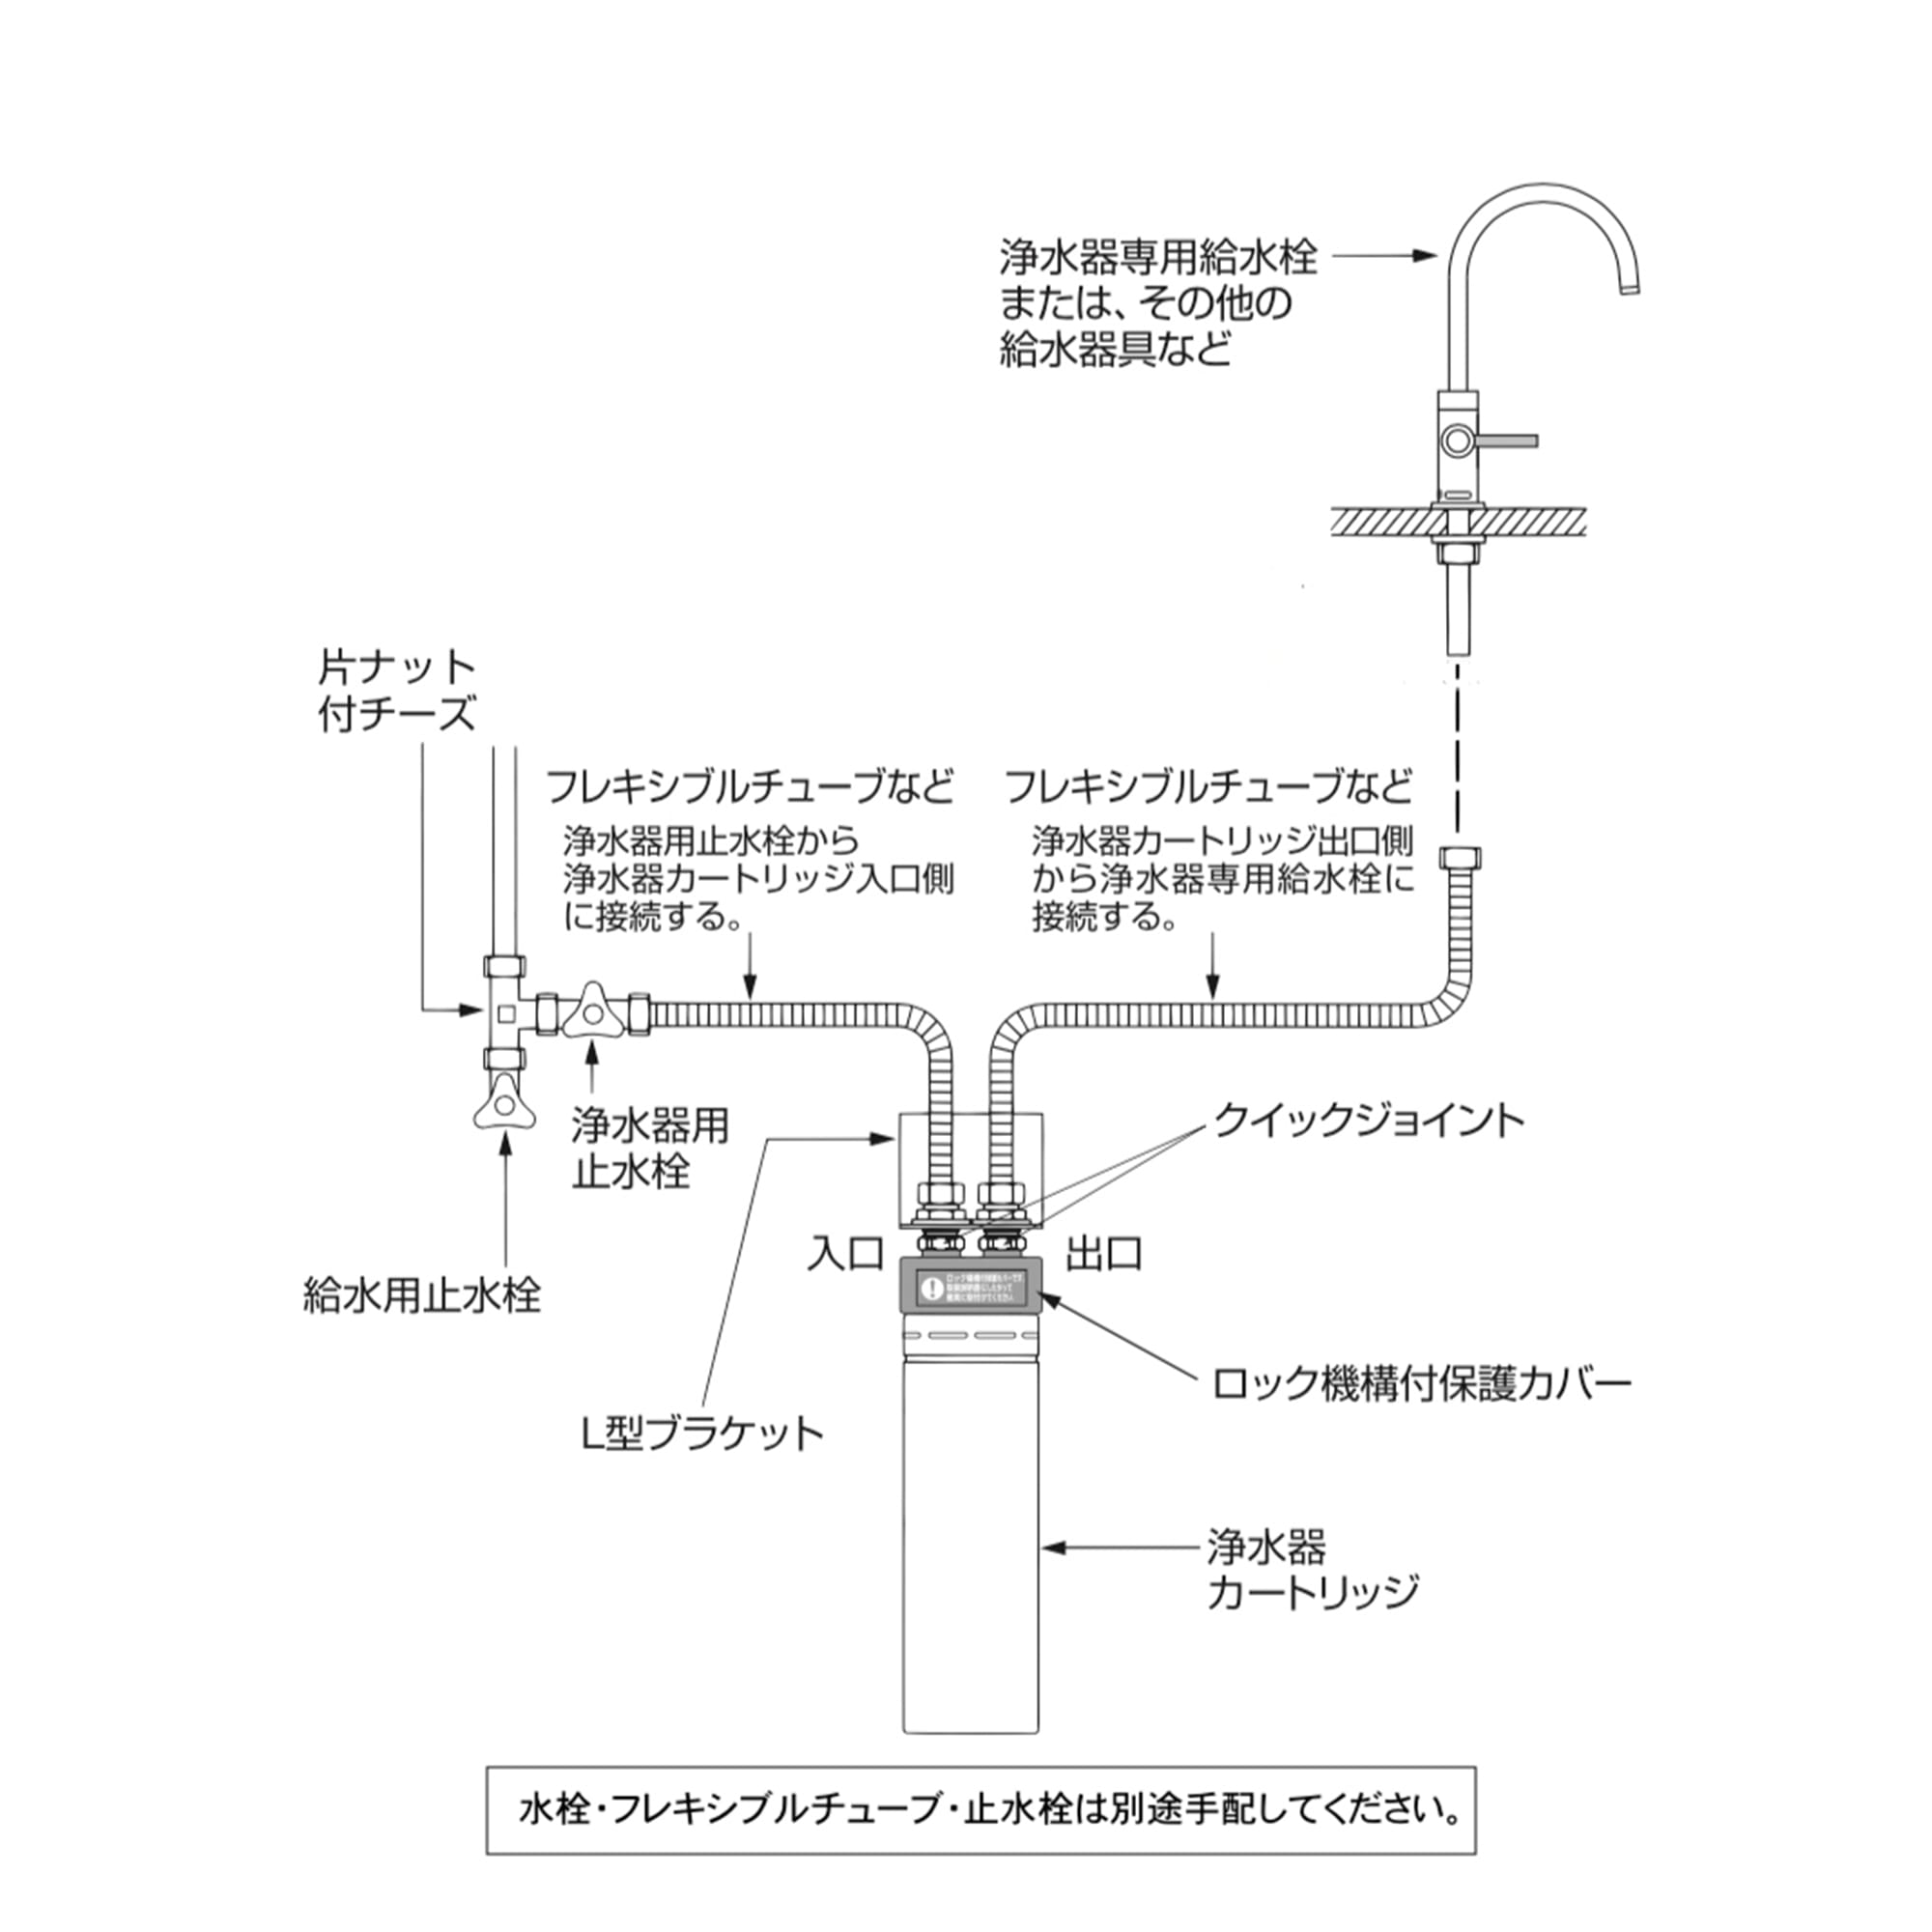 水栓が選べる浄水器 アンダーシンクタイプ KB-TP010-01-G270 水栓・フレキシブルホース・止水栓は別途ご準備ください